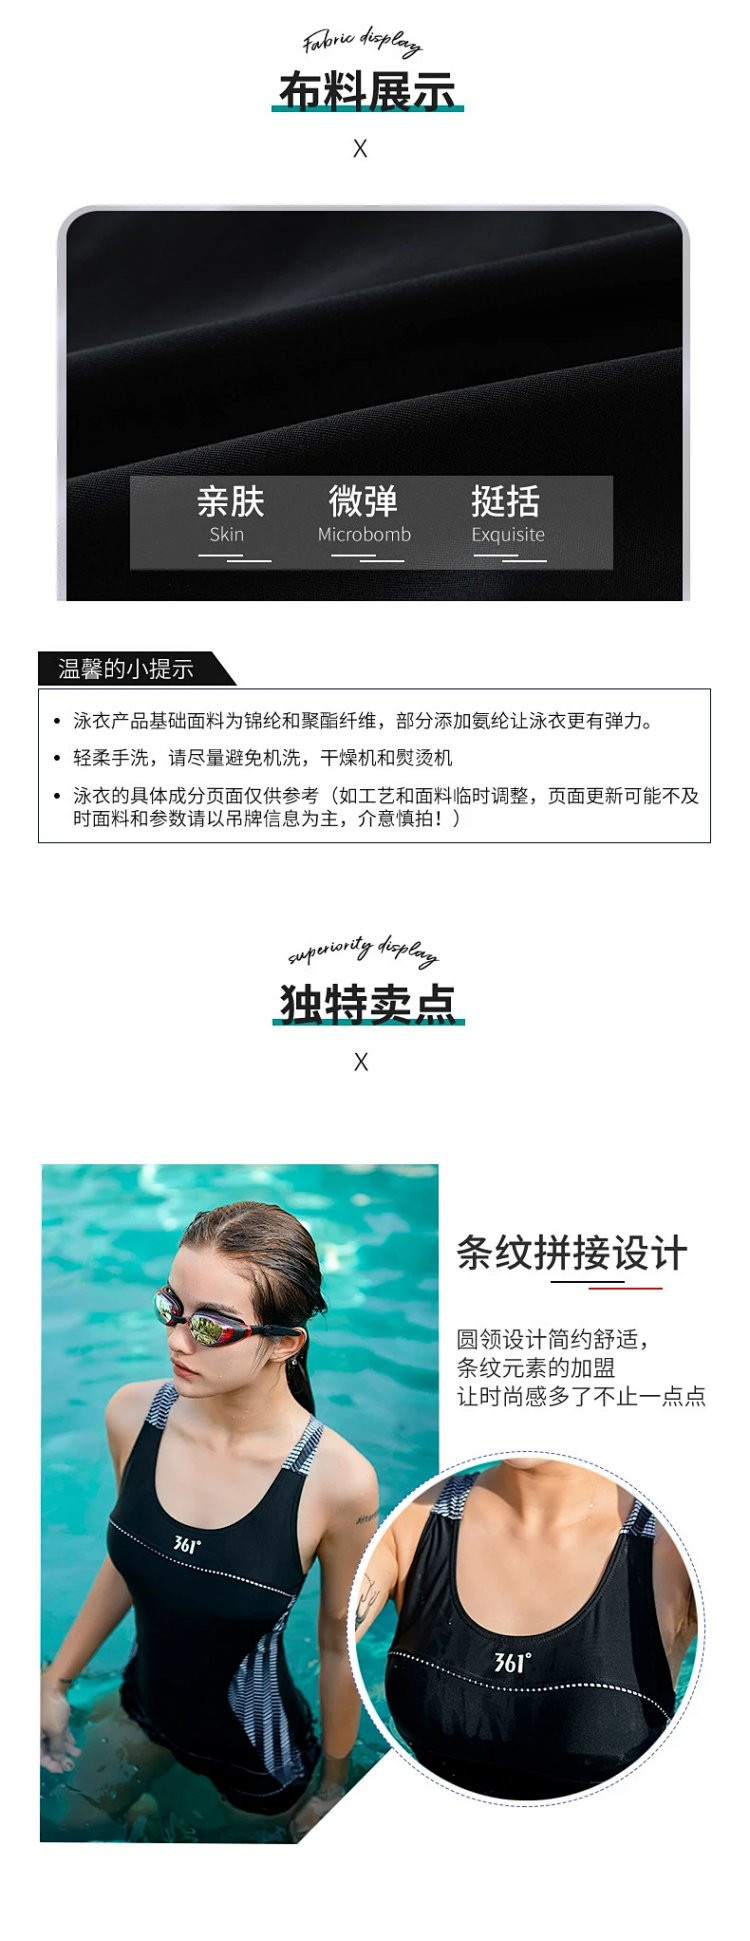 芙拉迪夏季专业运动显瘦保守三角式女士连体游泳衣